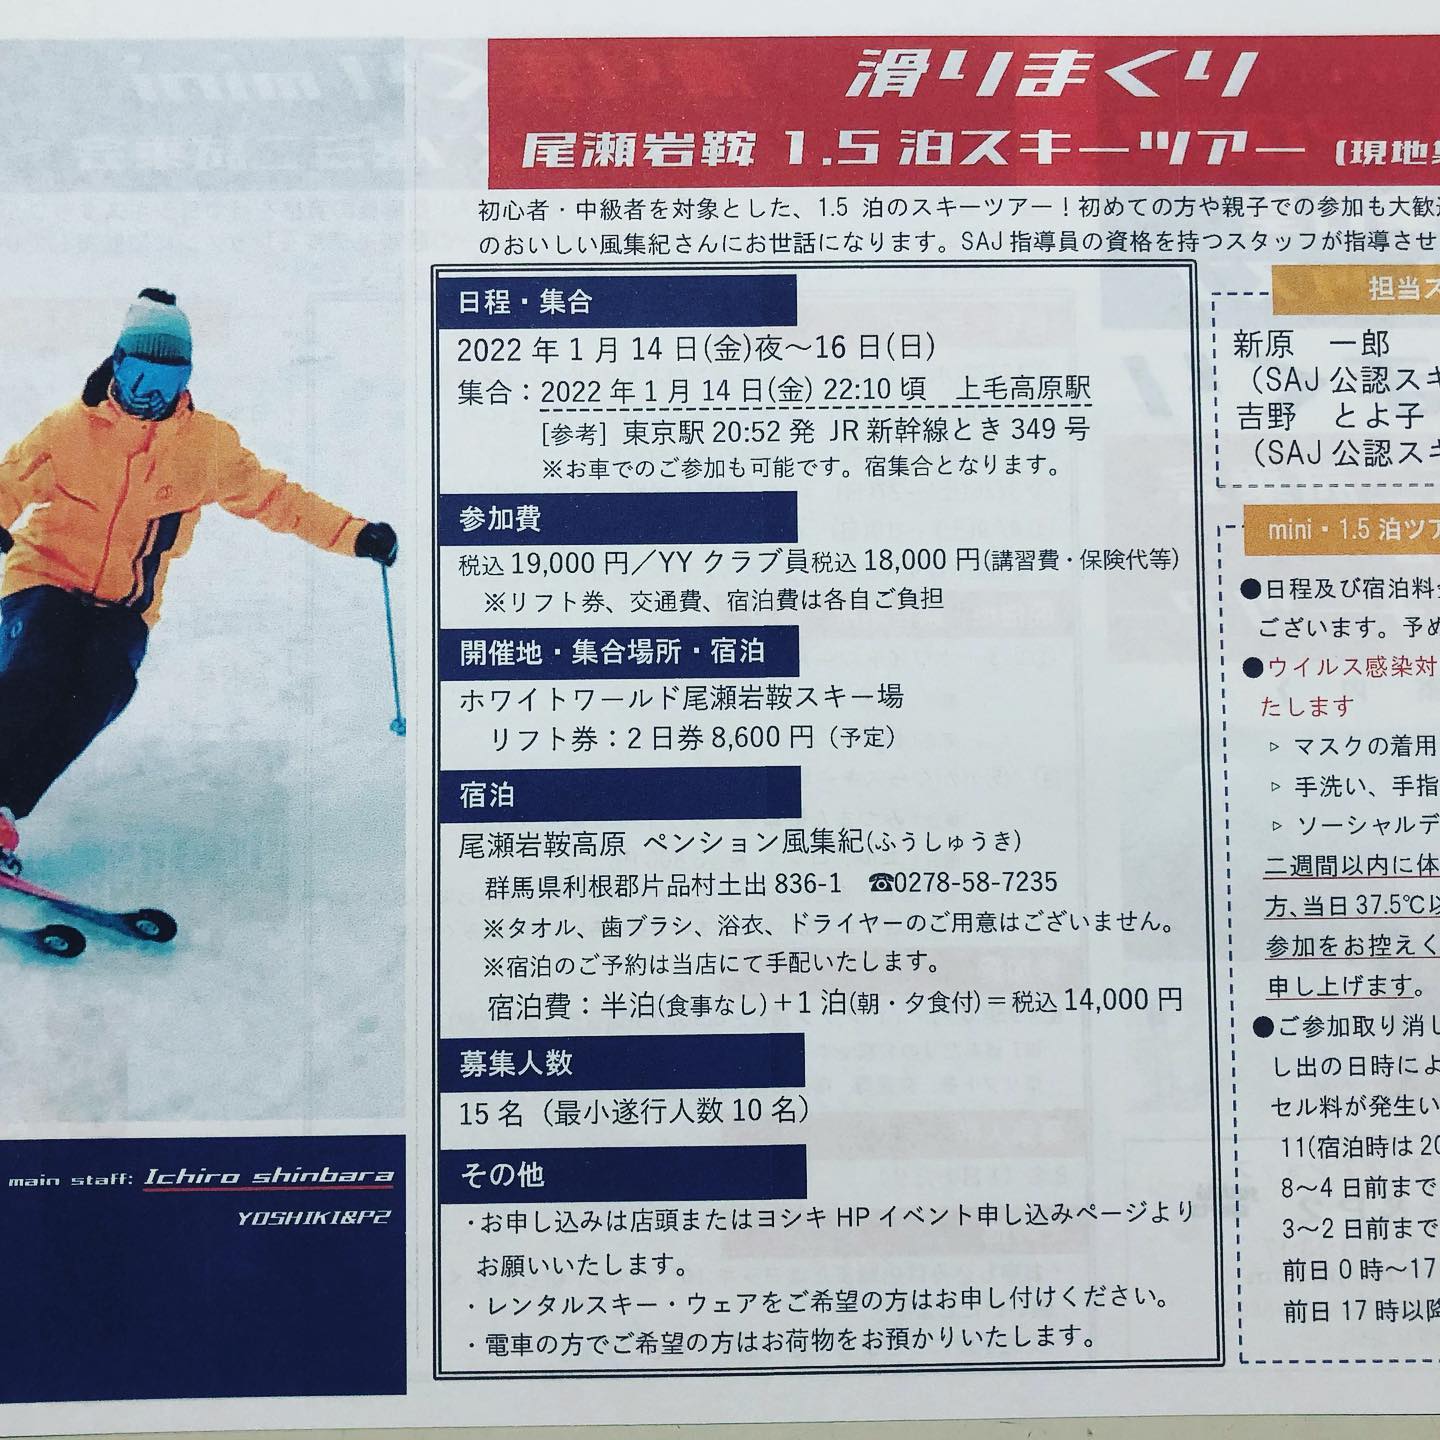 2021-2022シーズン スキーイベントの申込を開始いたしました。